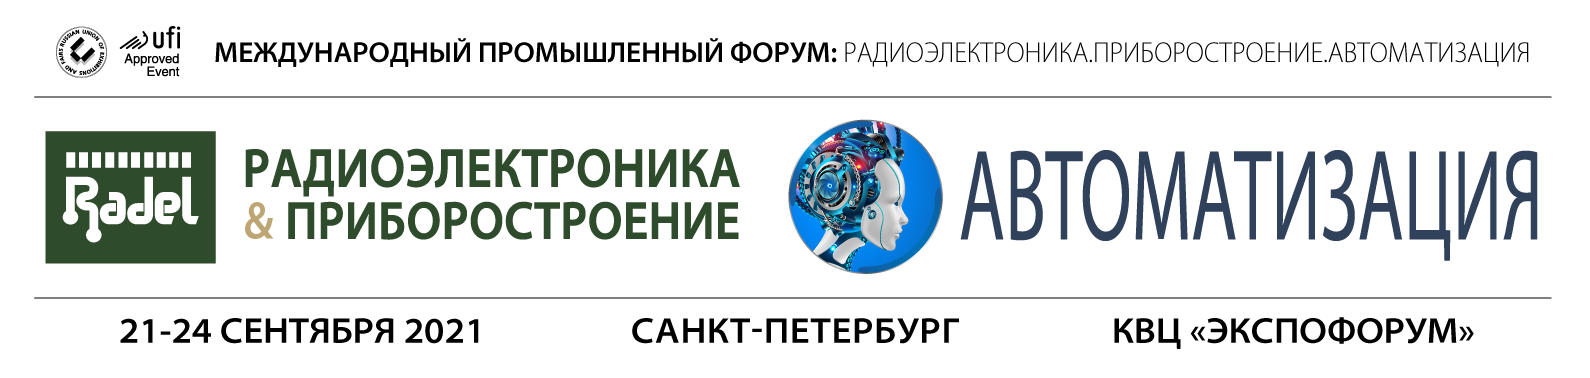 XXI международная специализированная выставка «Радиоэлектроника и приборостроение»